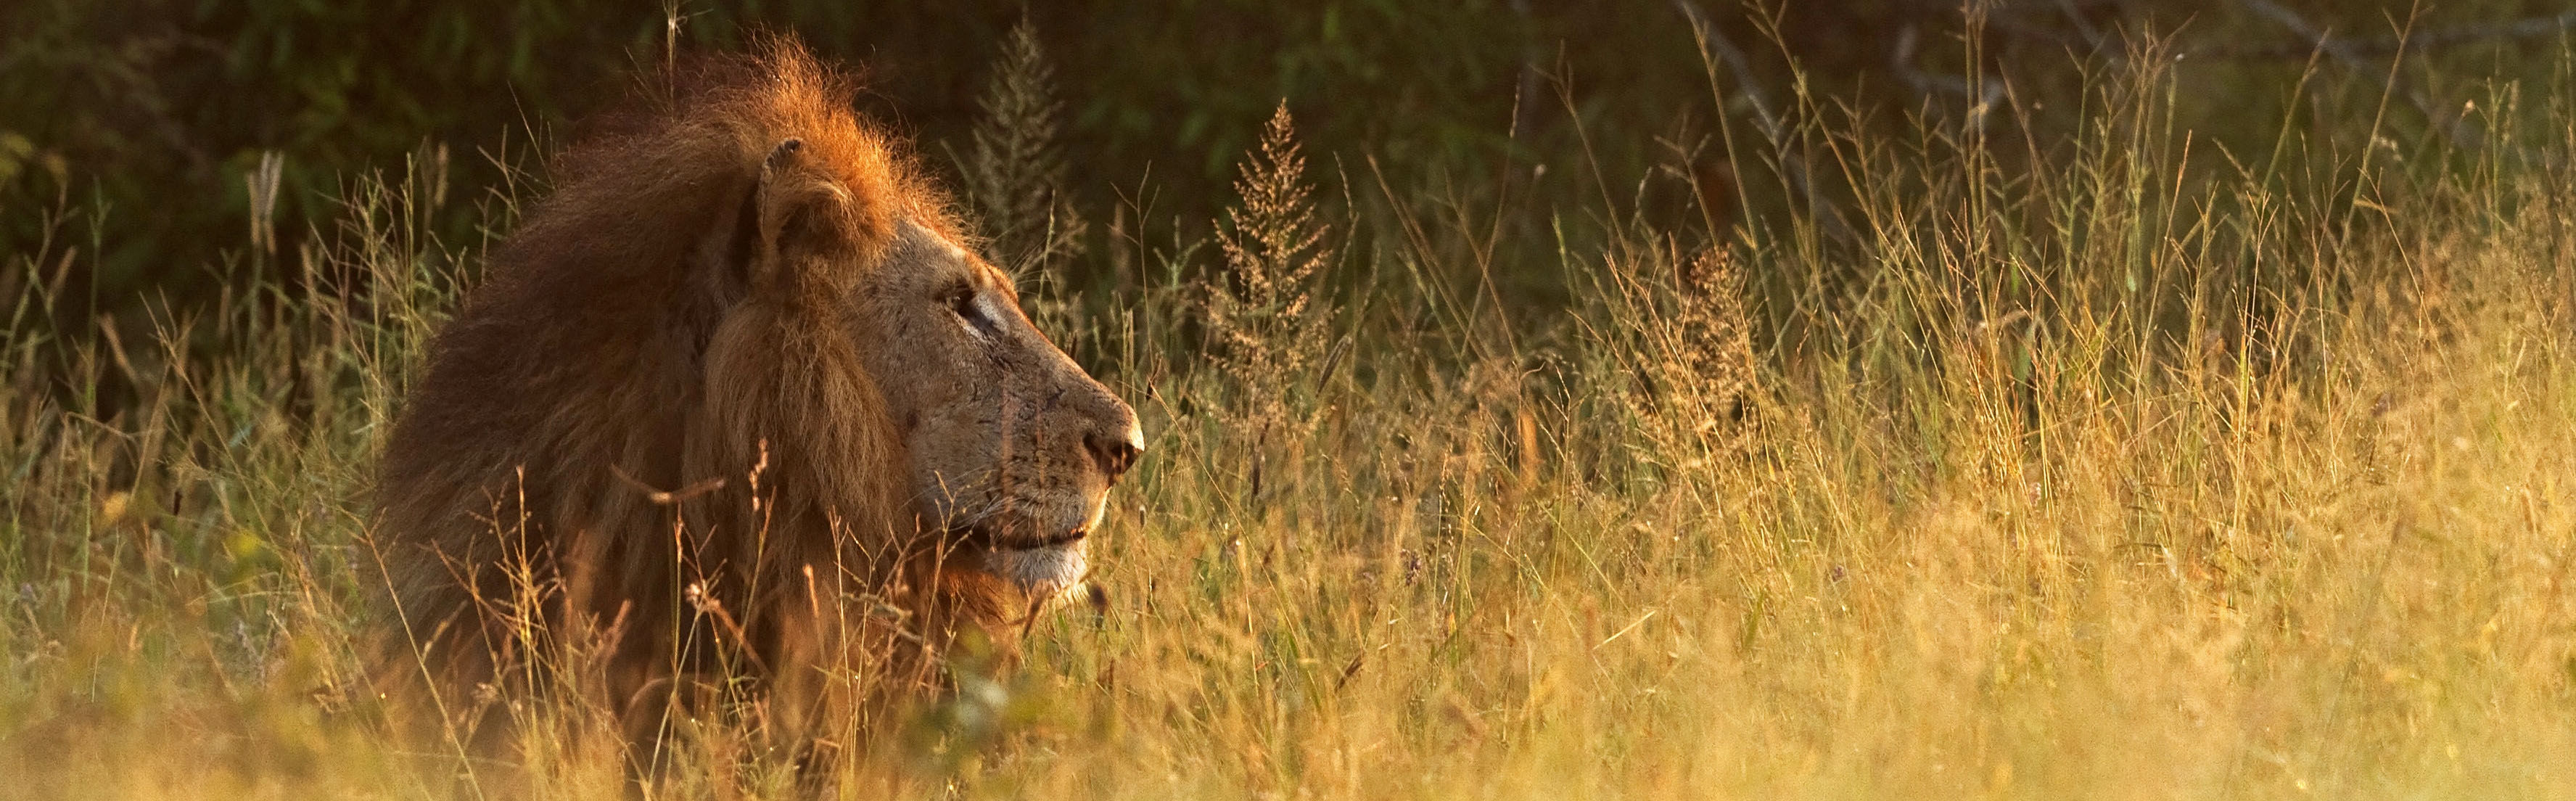 Kruger National Park | Hans Veth